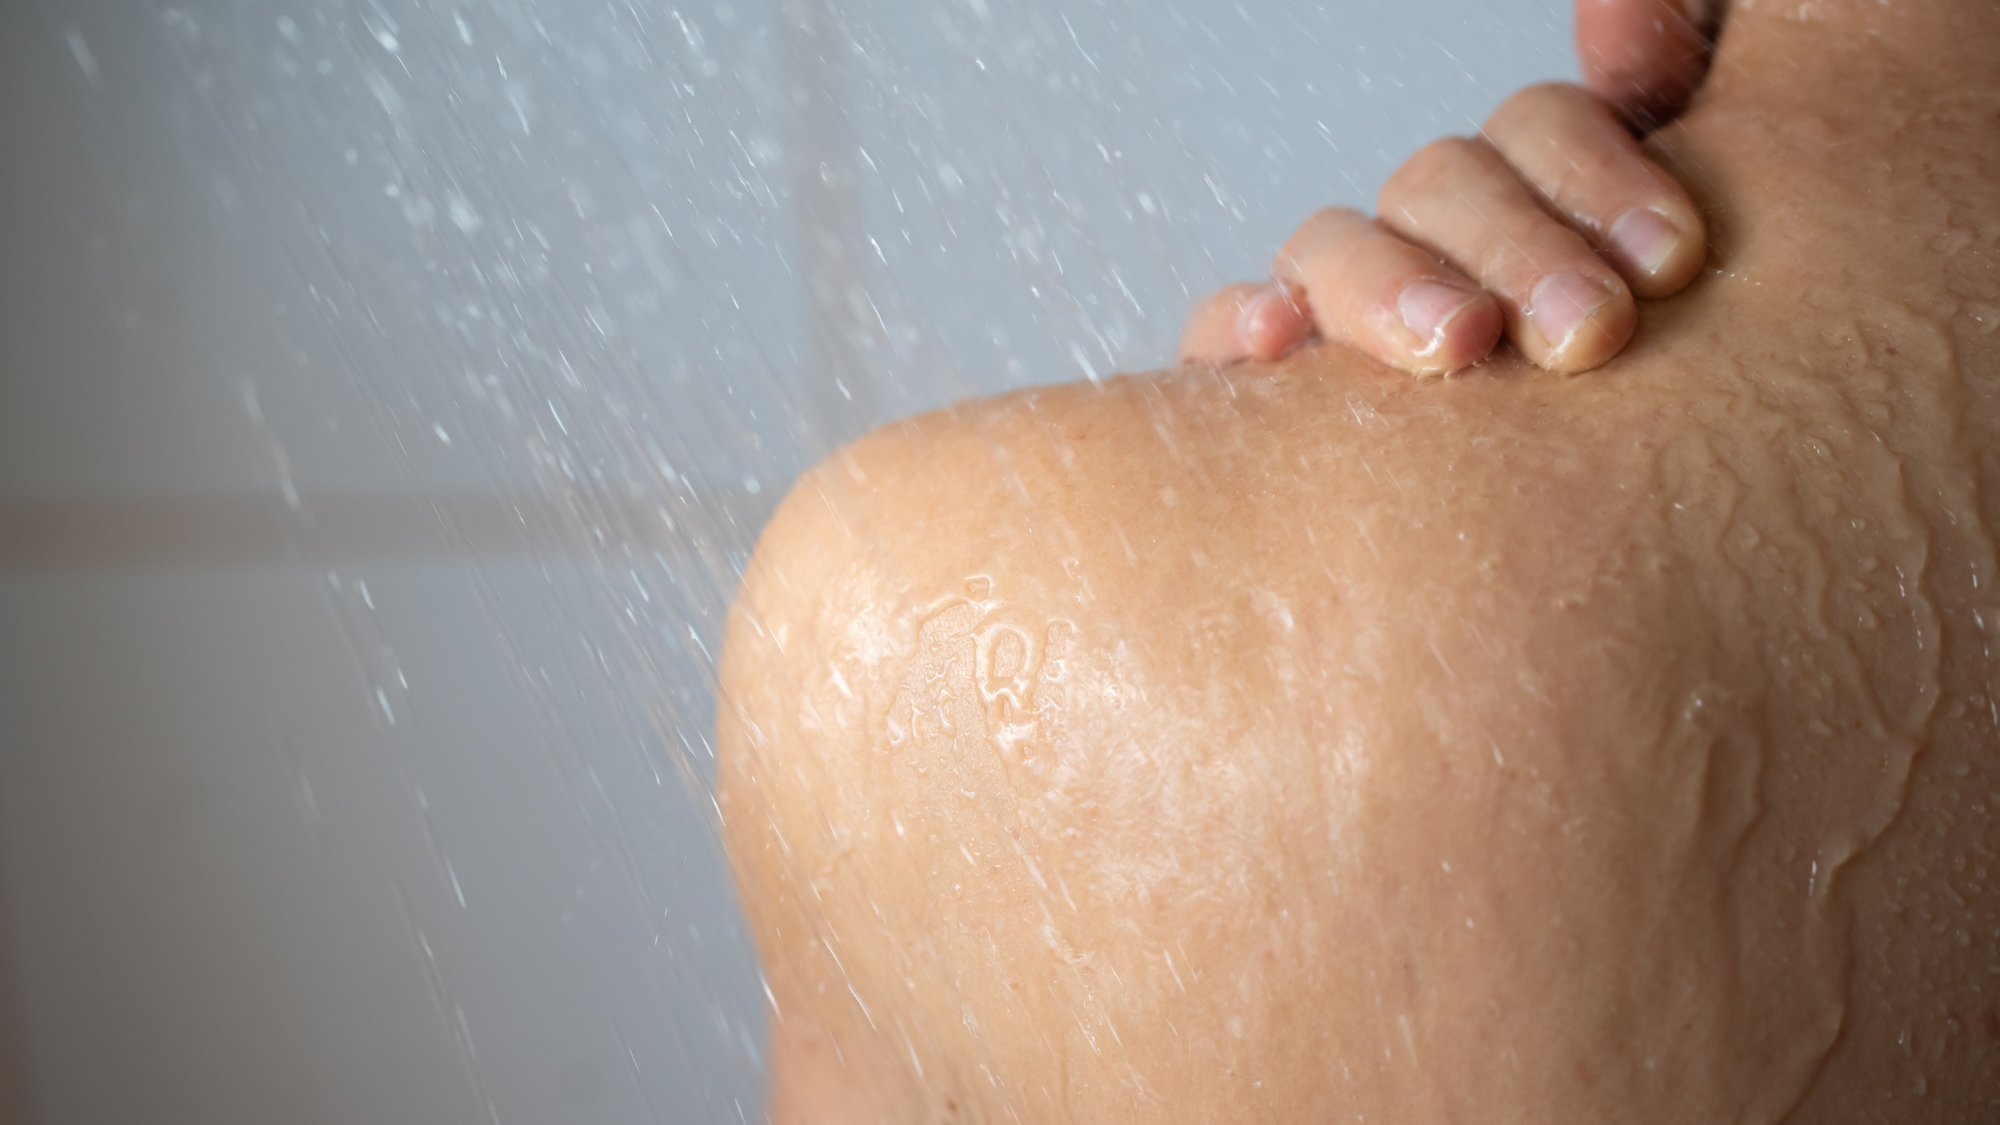 Do Body Scrubs Make Bumps Worse?